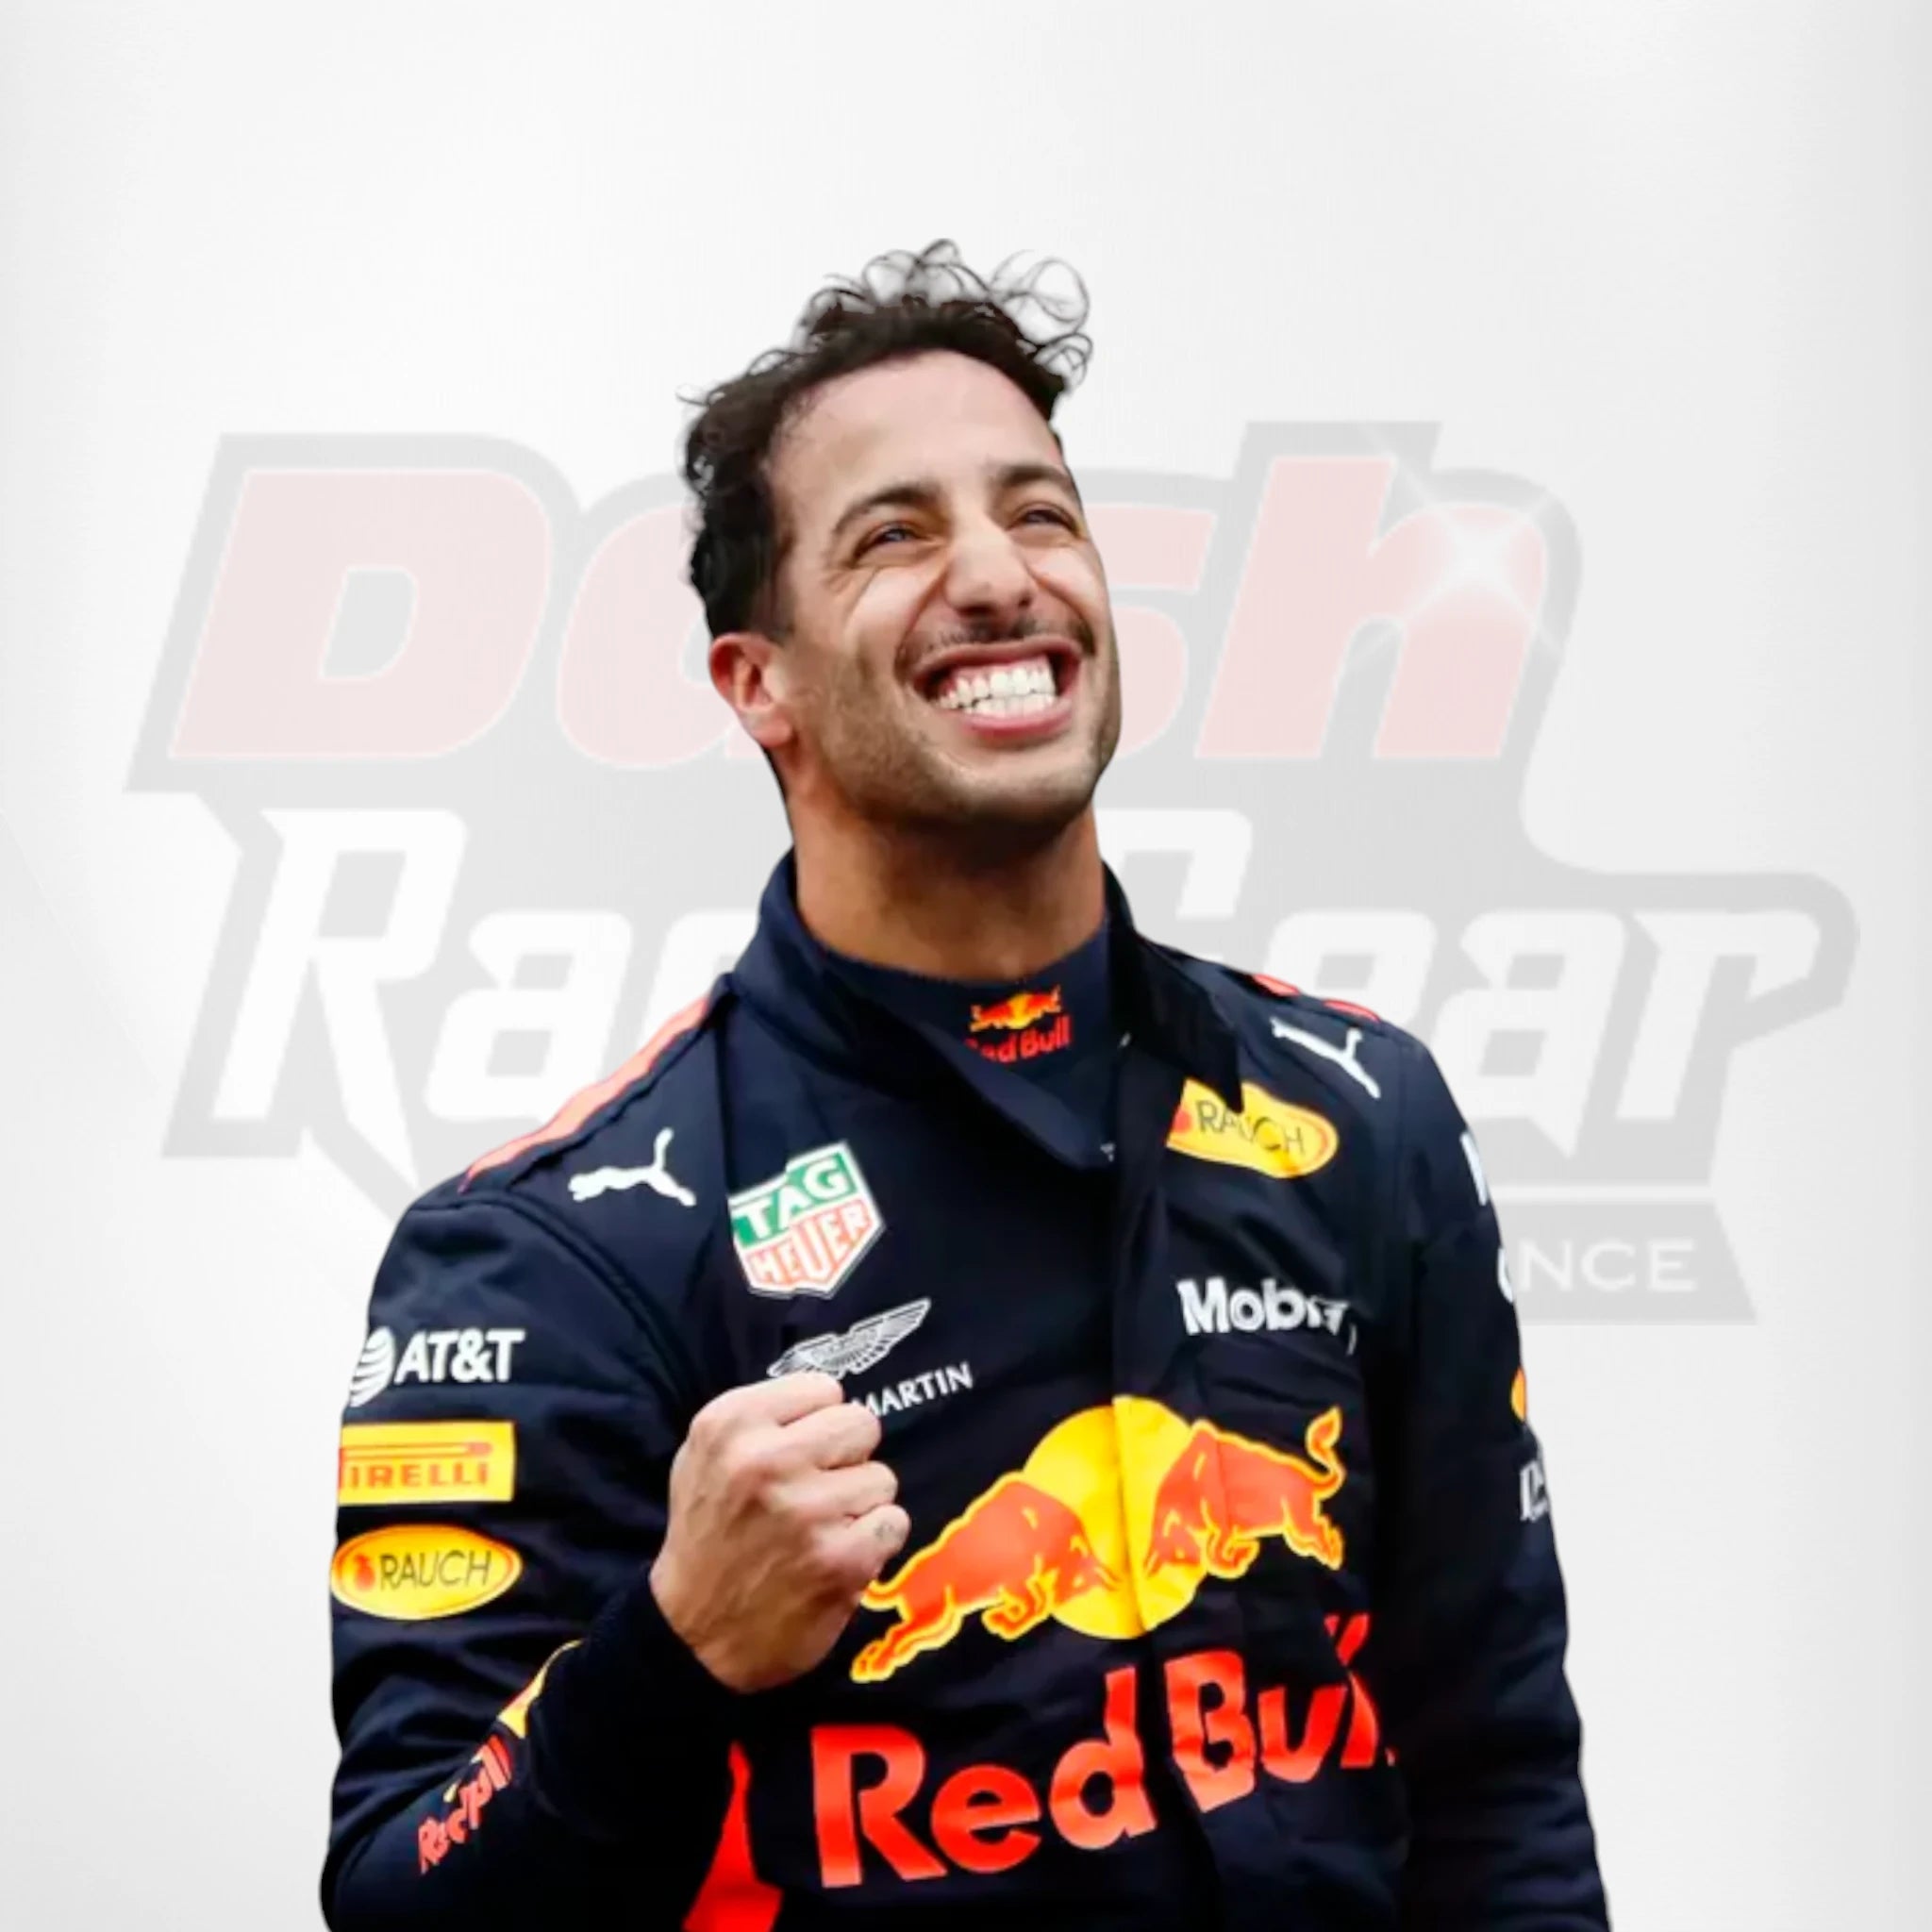 2018 Red Bull Daniel Ricciardo Formula 1 Race Suit